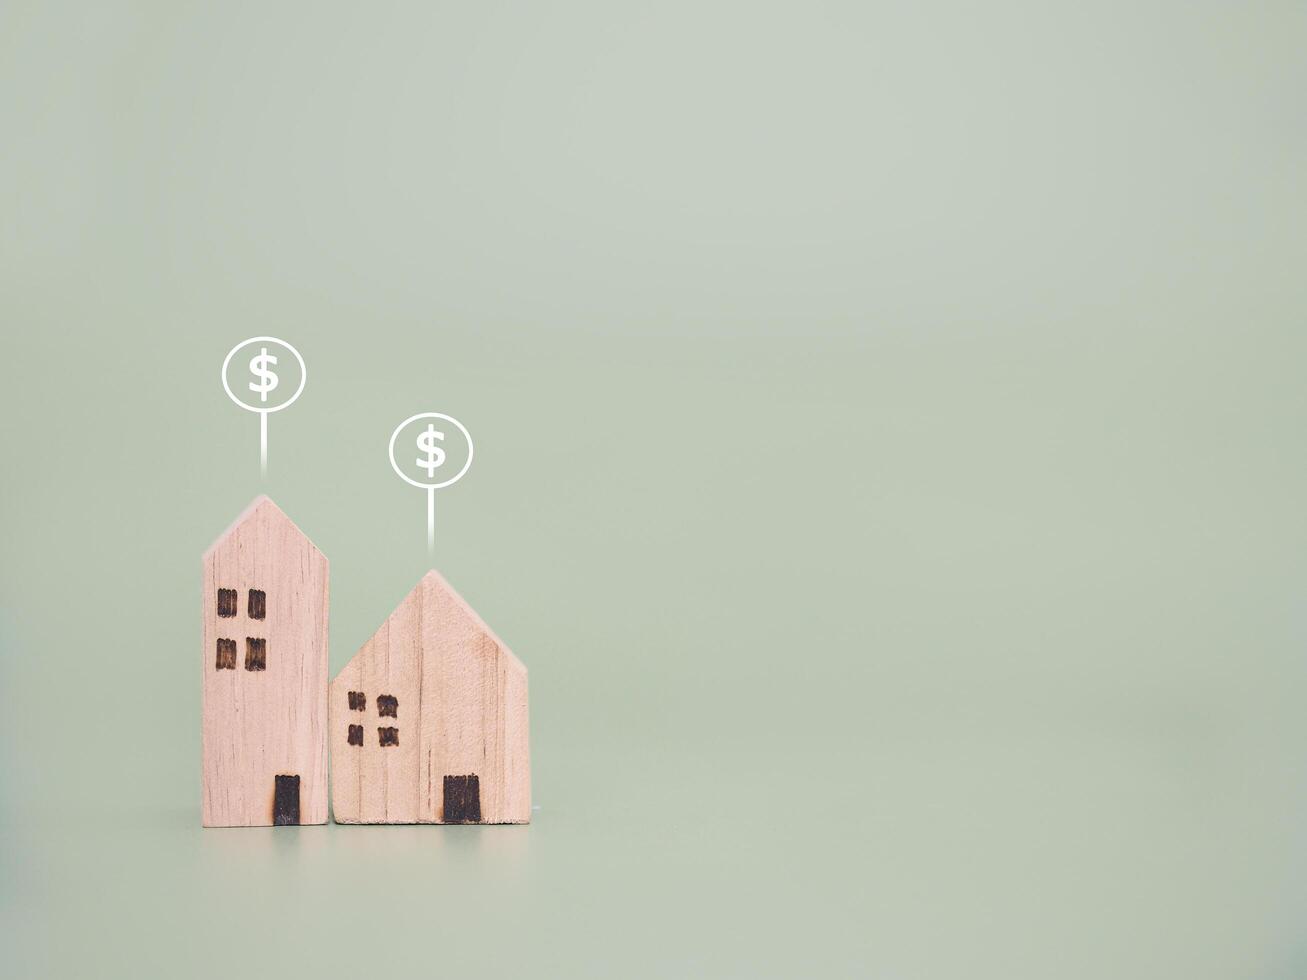 miniatuur huis en dollar munt pictogrammen. de concept van prijs van huis, eigendom investering, huis hypotheek, echt landgoed foto